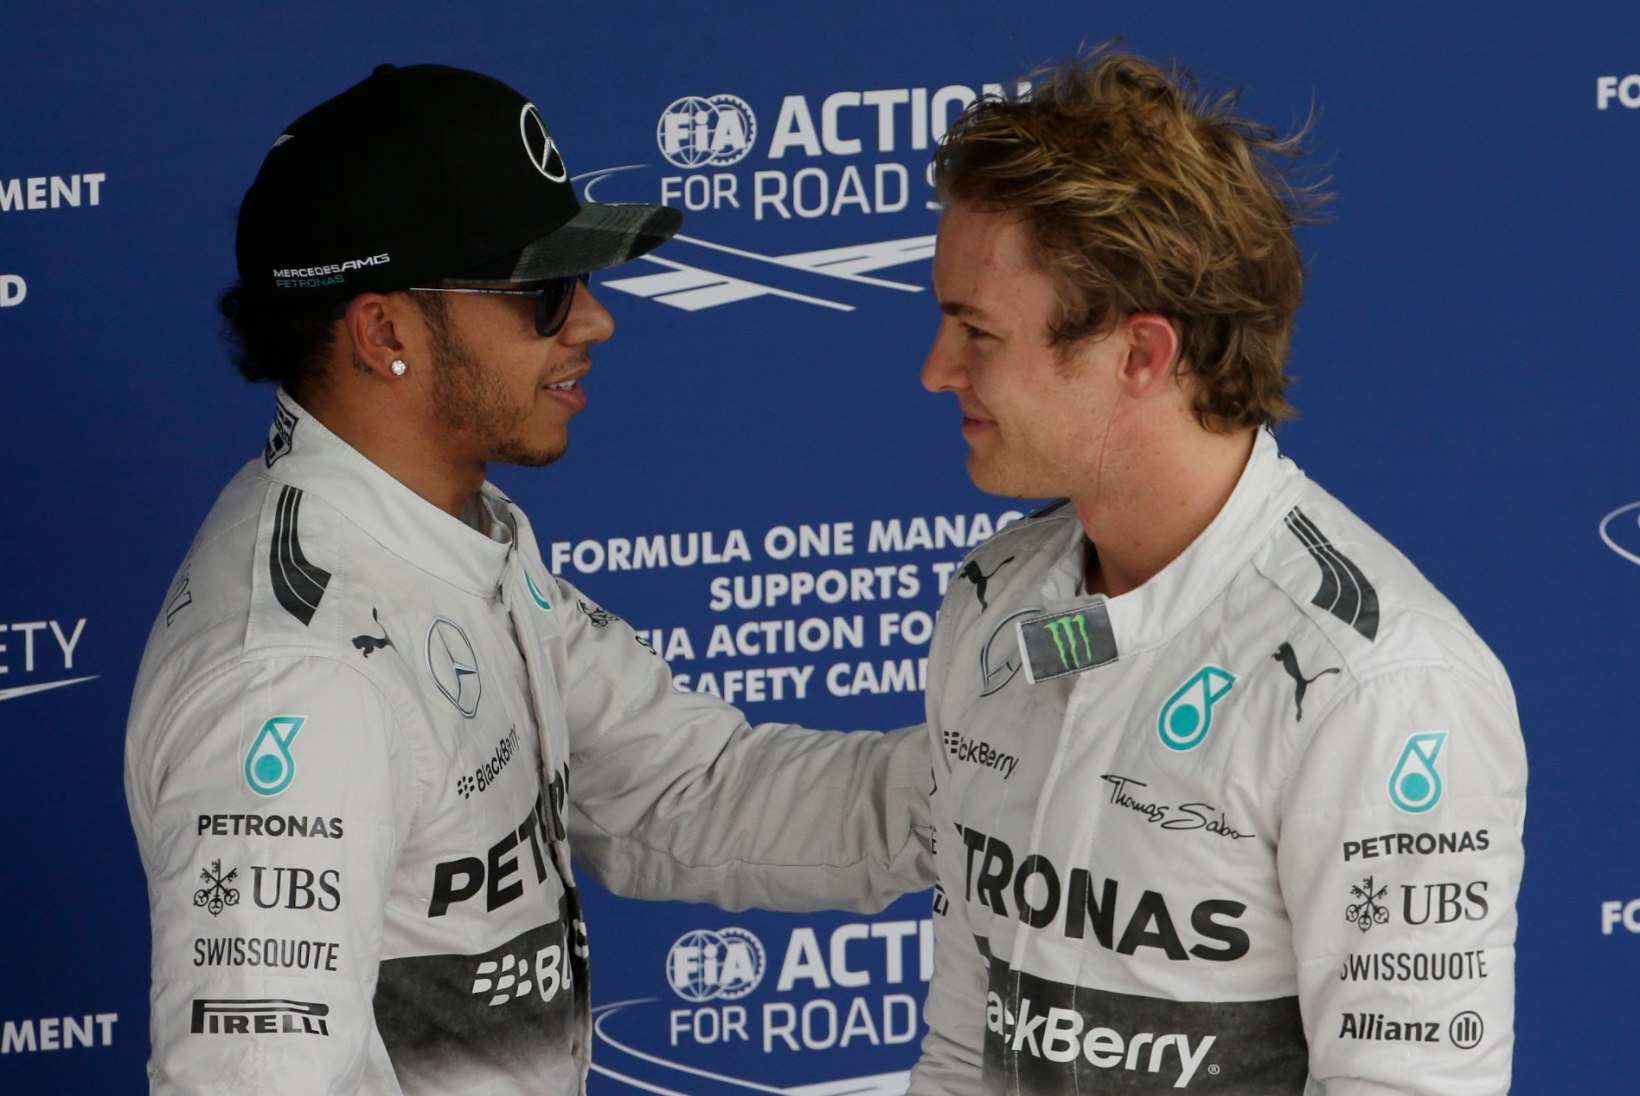 GALERII: Võitlus esikohale jätkub - Rosberg tegi kvalifikatsioonis Hamiltonile ära. 